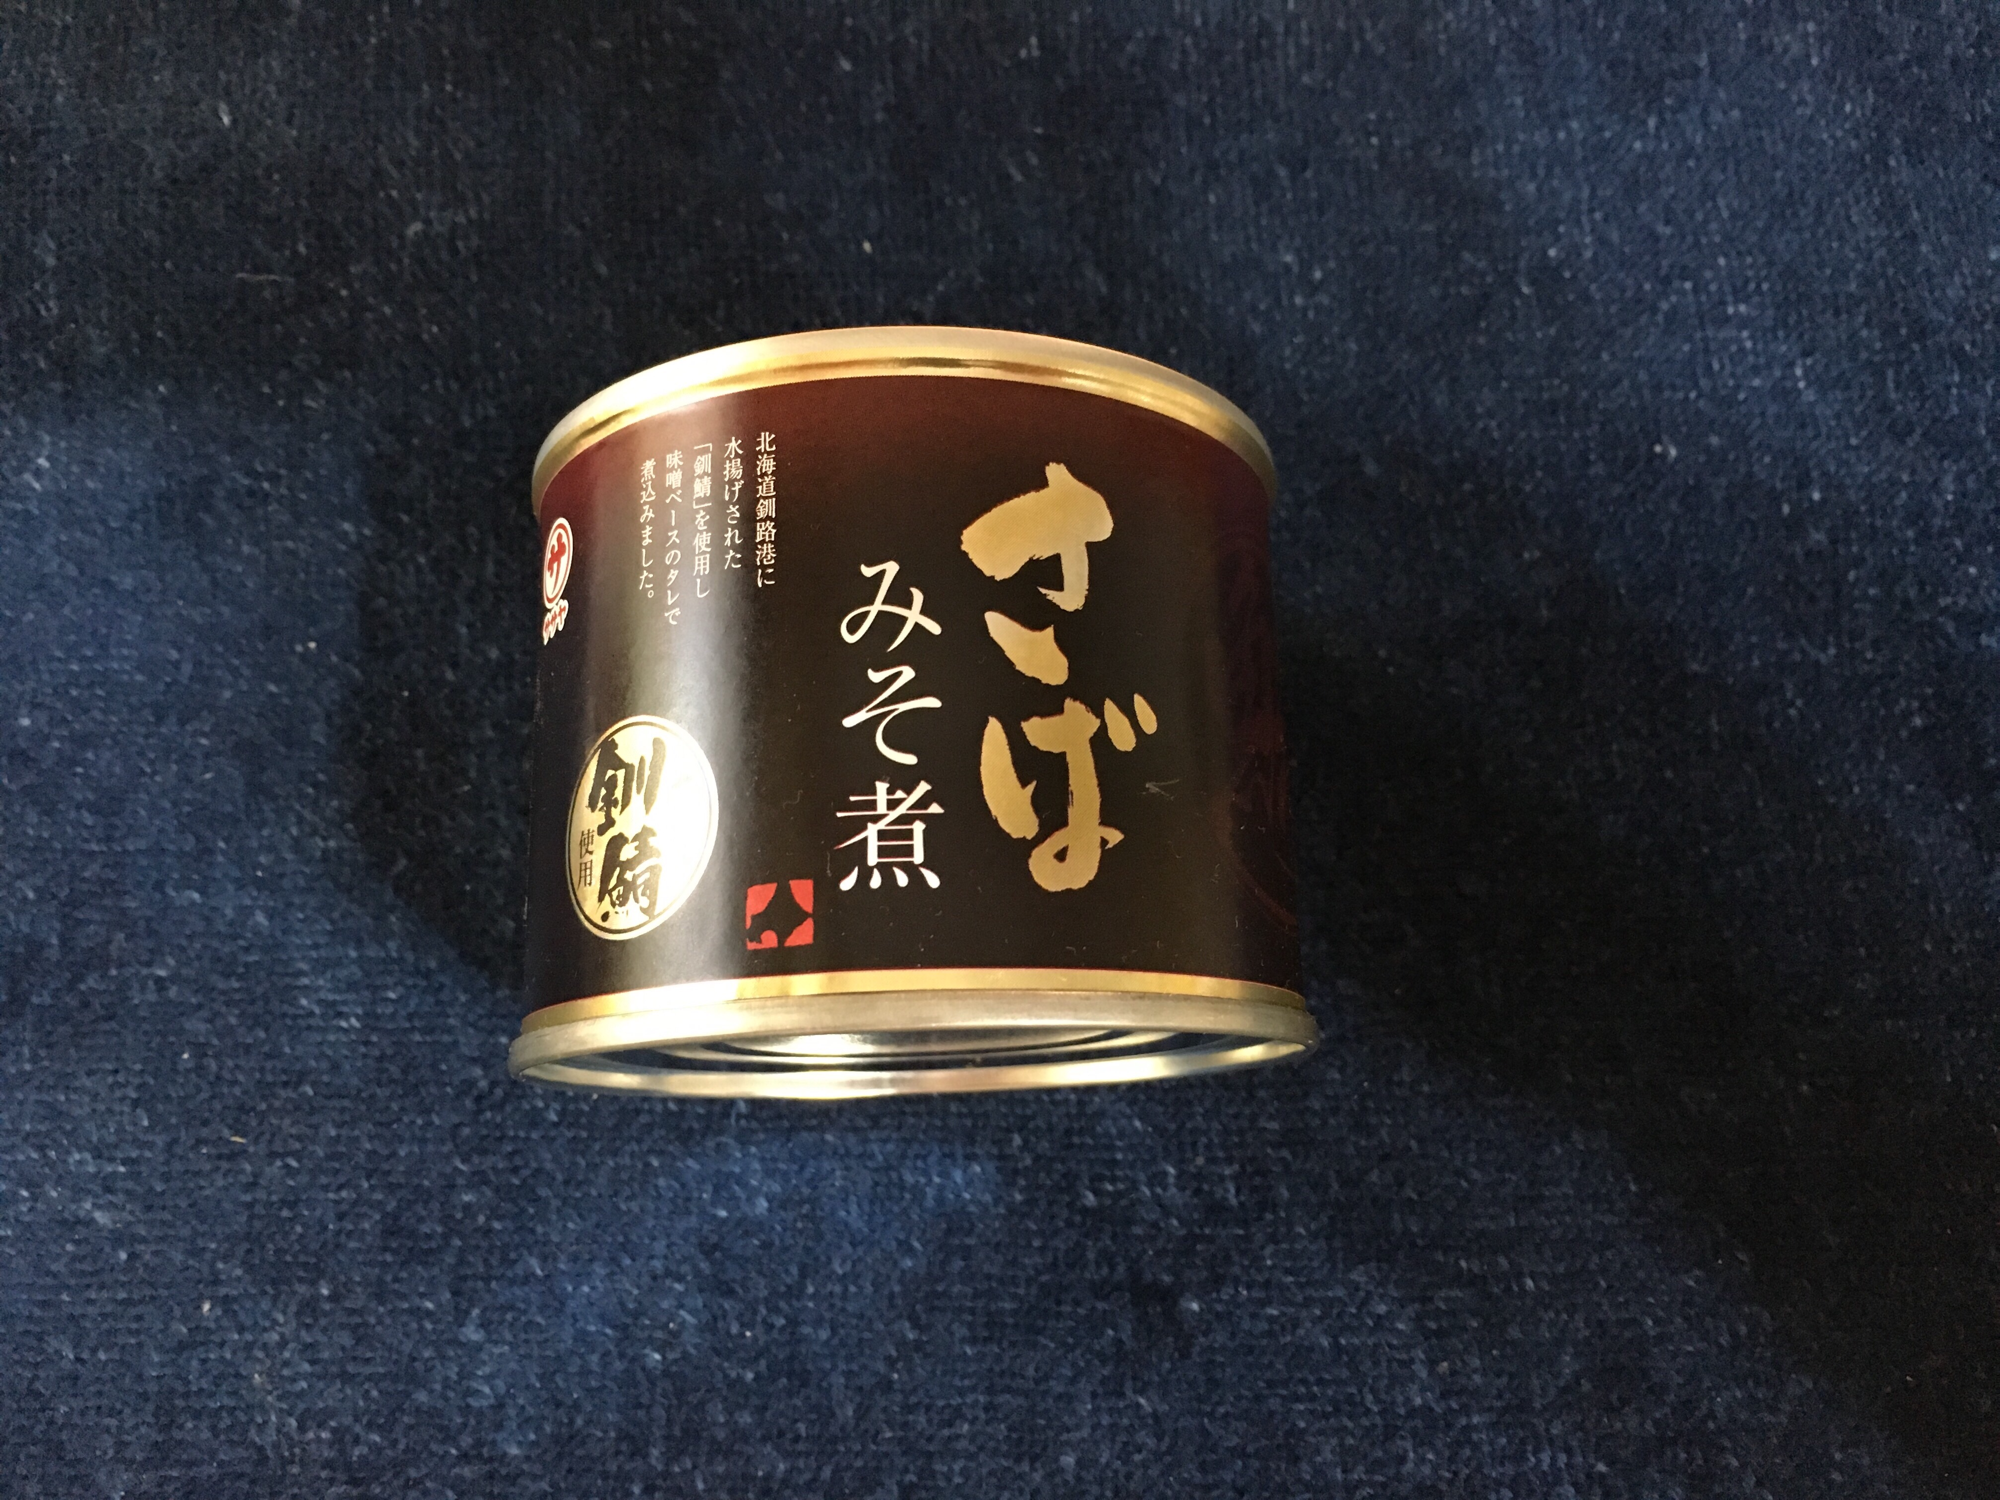 マルサ笹谷商店の釧路市ブランド鯖缶「釧鯖 さばみそ煮」を食レポしてみた。【5つ星評価、味】